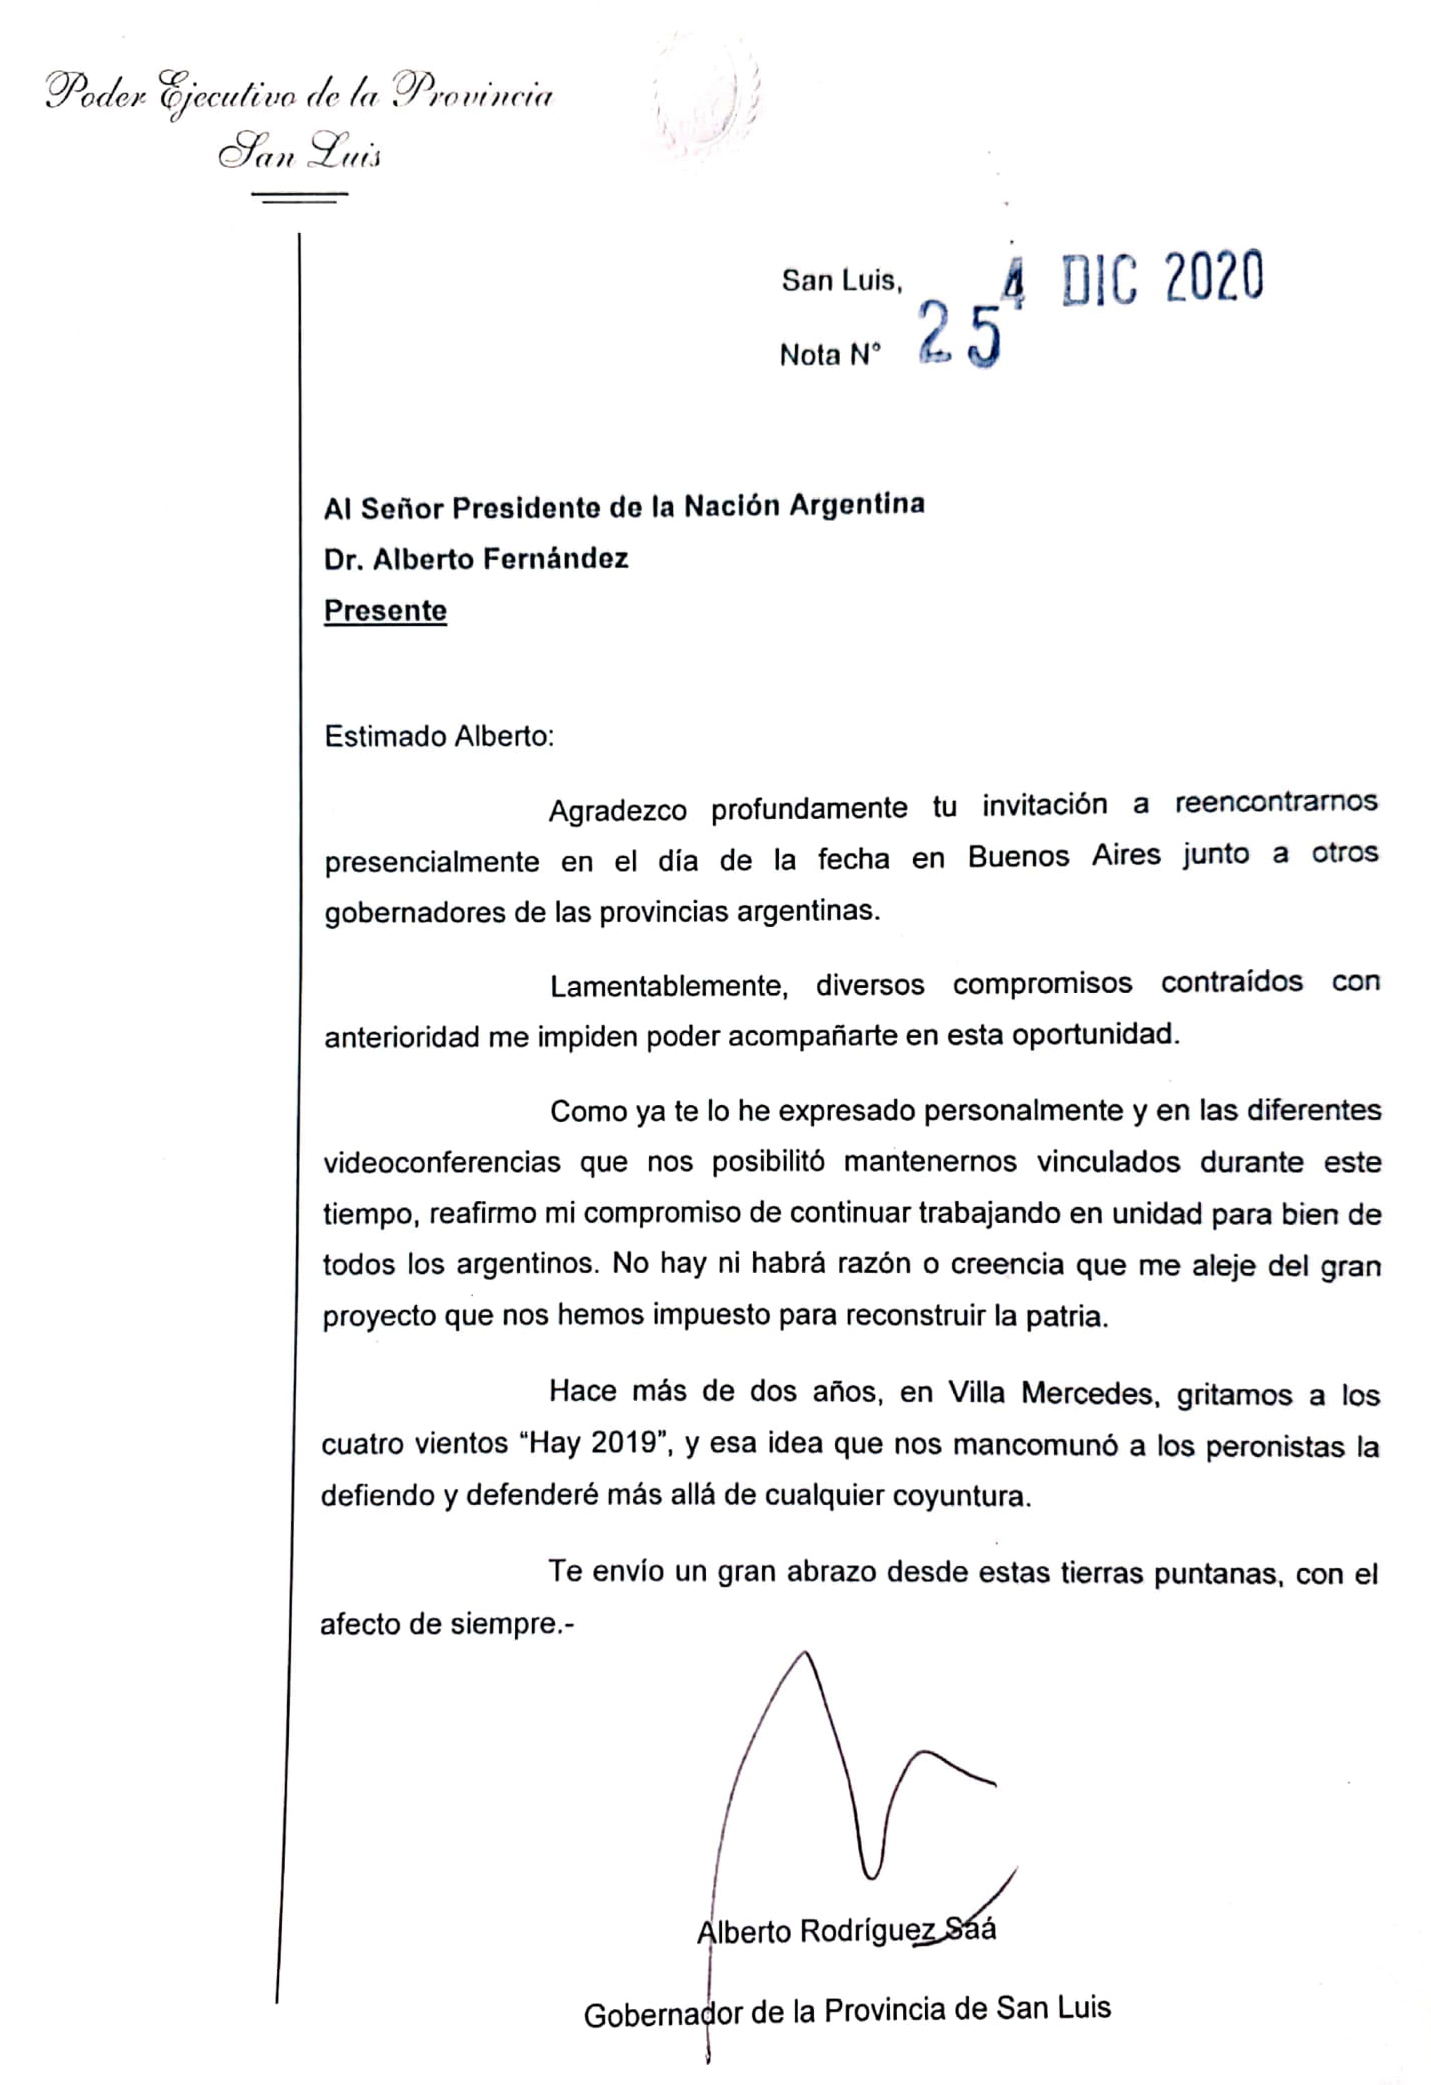 Ante la imposibilidad de participar de un acto con gobernadores, Alberto Rodríguez Saá le envió una carta al presidente Fernández